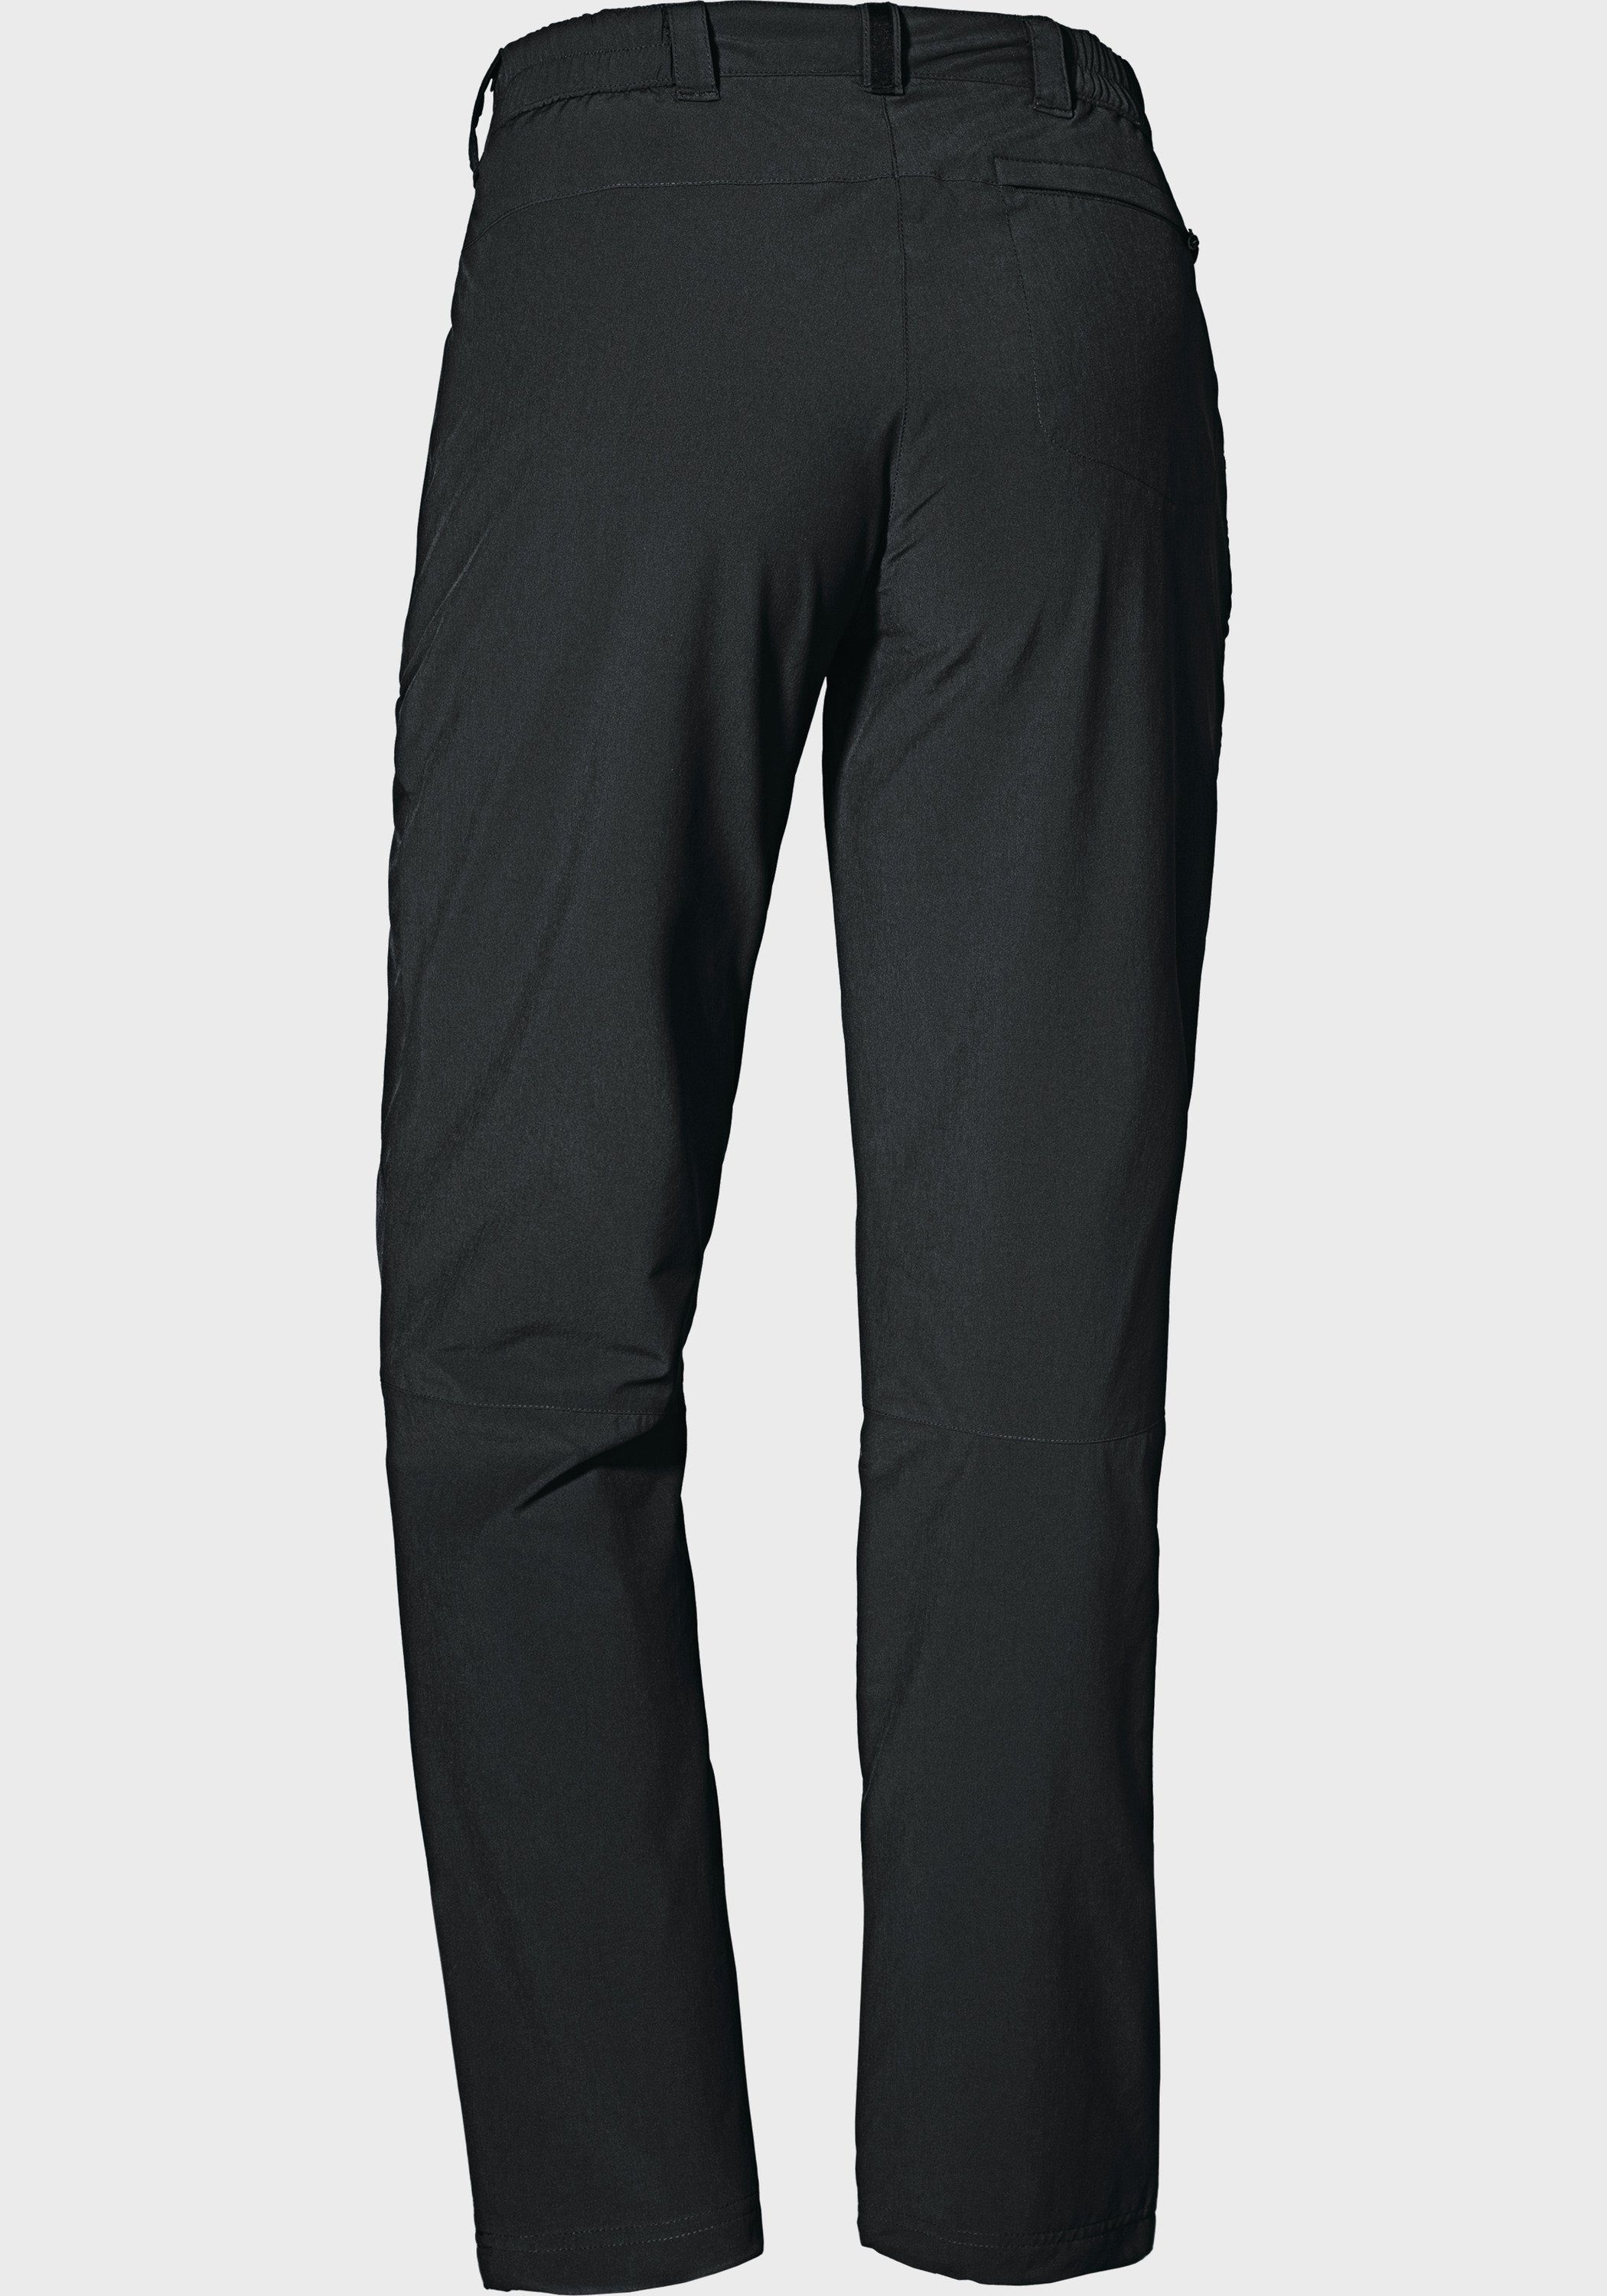 L Pants Warm Schöffel Outdoorhose schwarz Engadin1